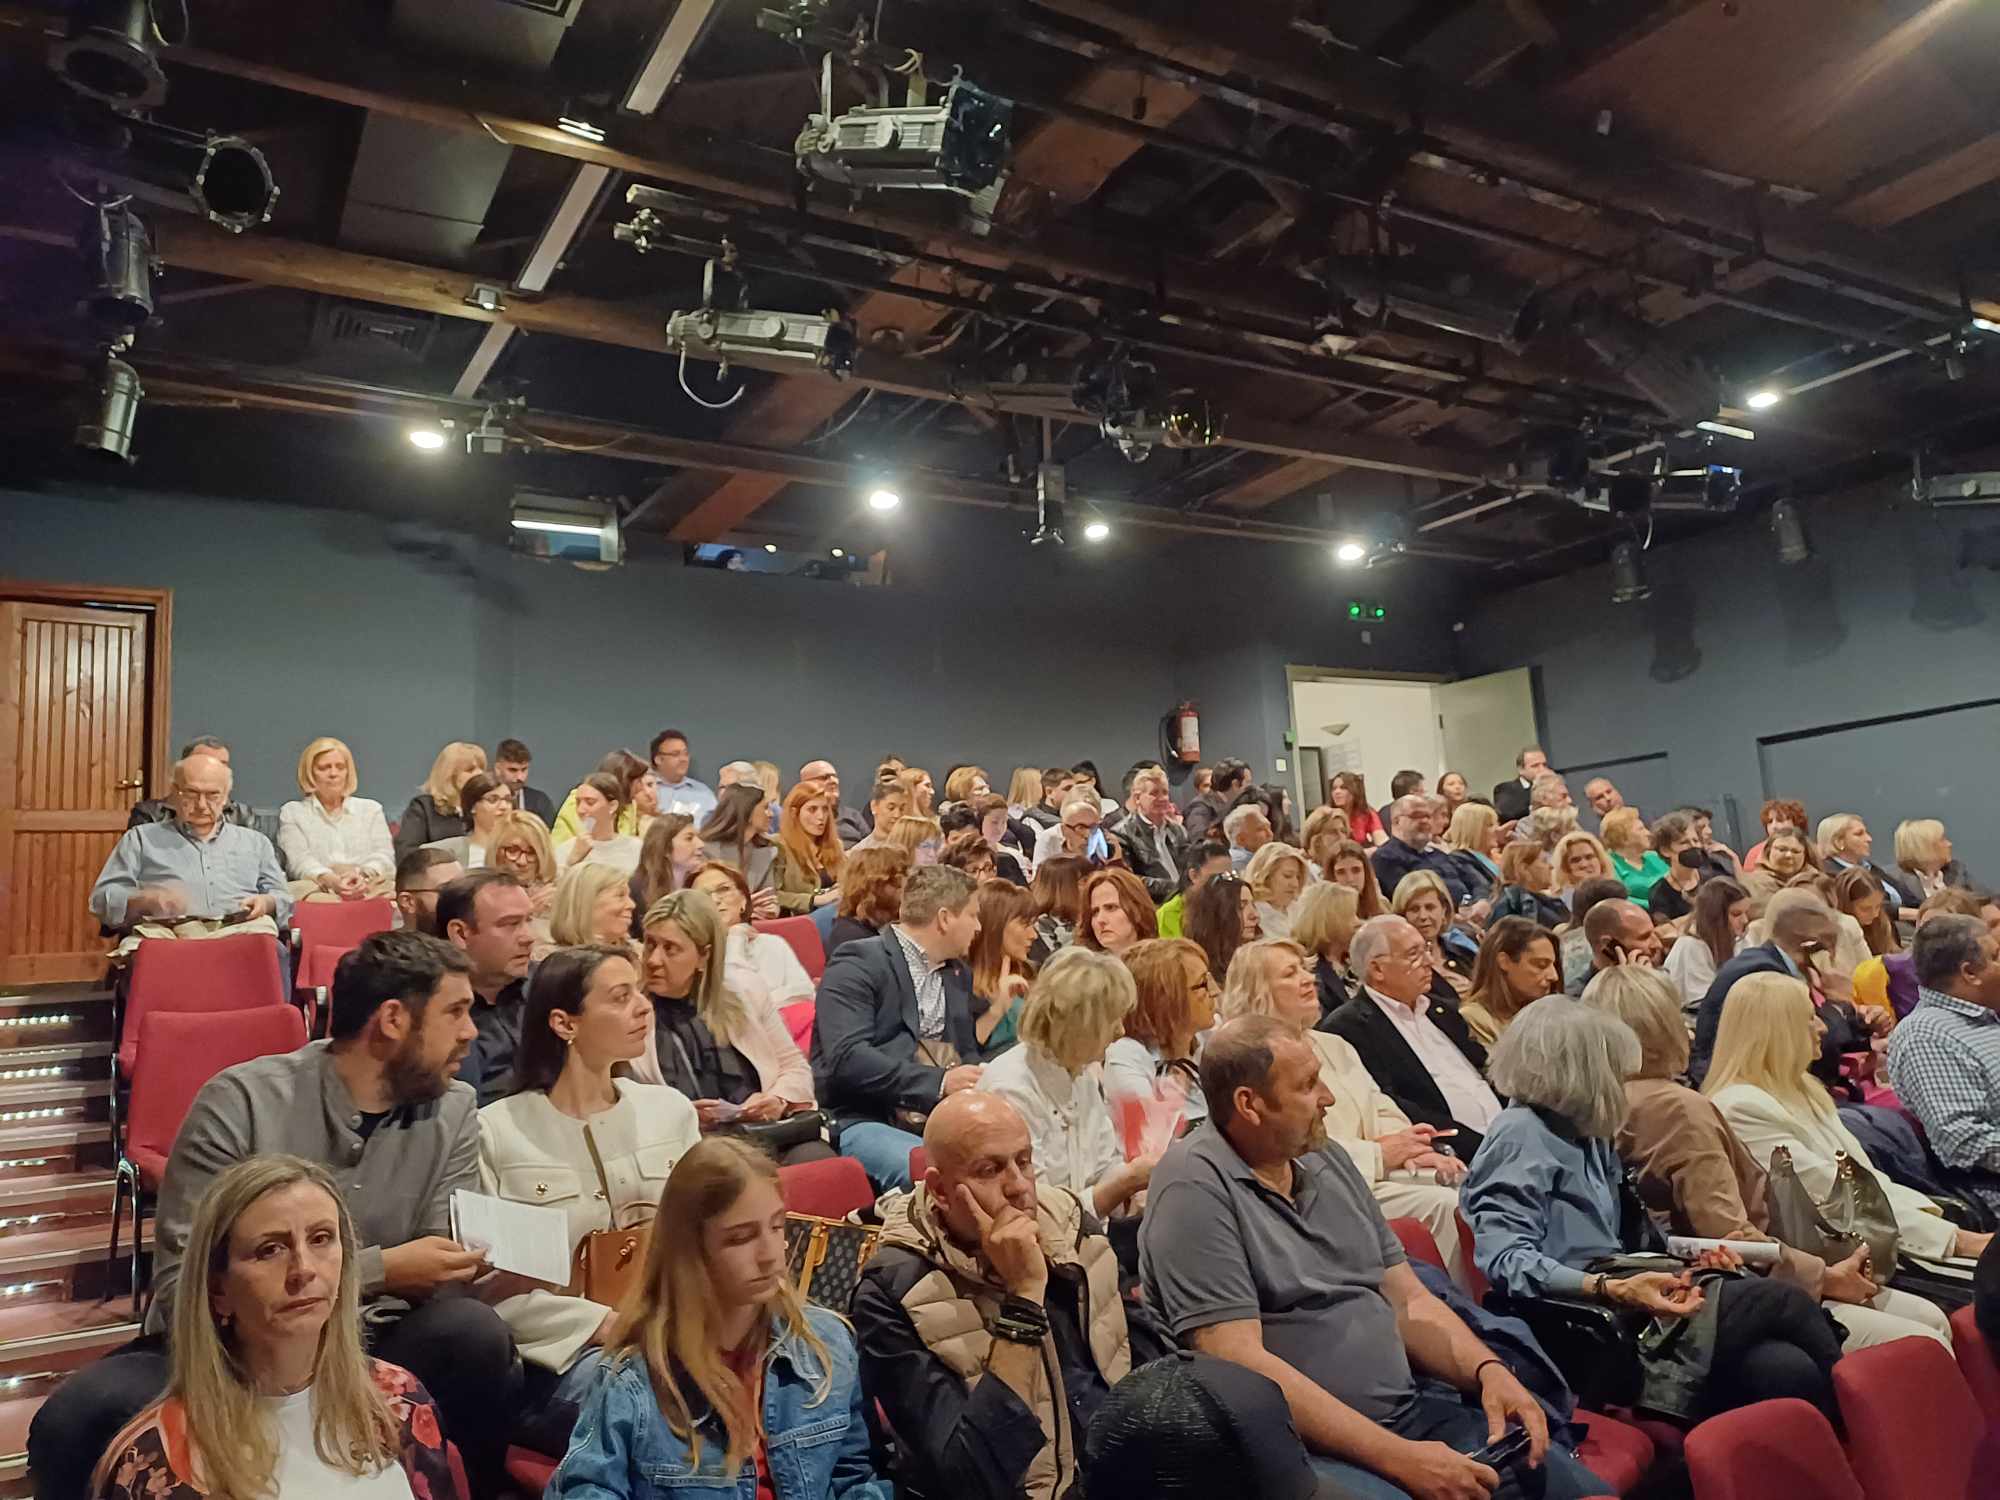 Ο σύλλογος φίλων θεάτρου «Αυλαία» συνεχίζει το κύκλο της διοργάνωσης «Όλη η πόλη μία σκηνή» (ΦΩΤΟ)